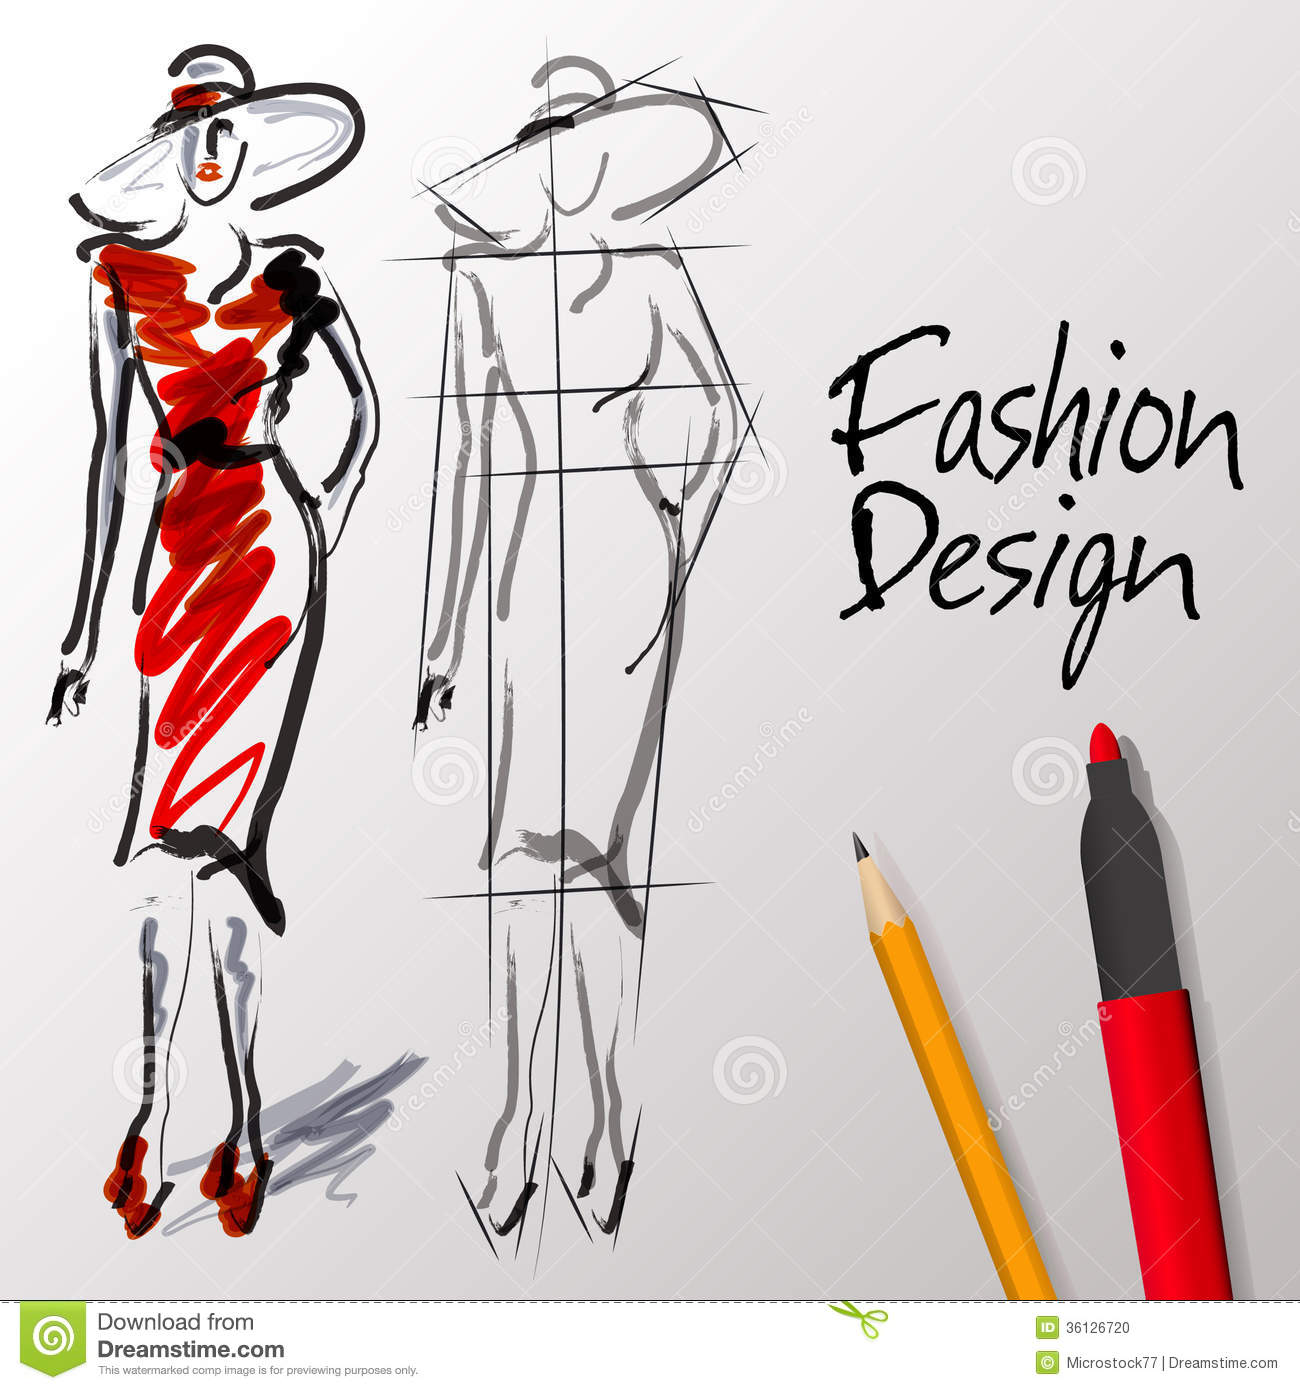 Fashion design clipart